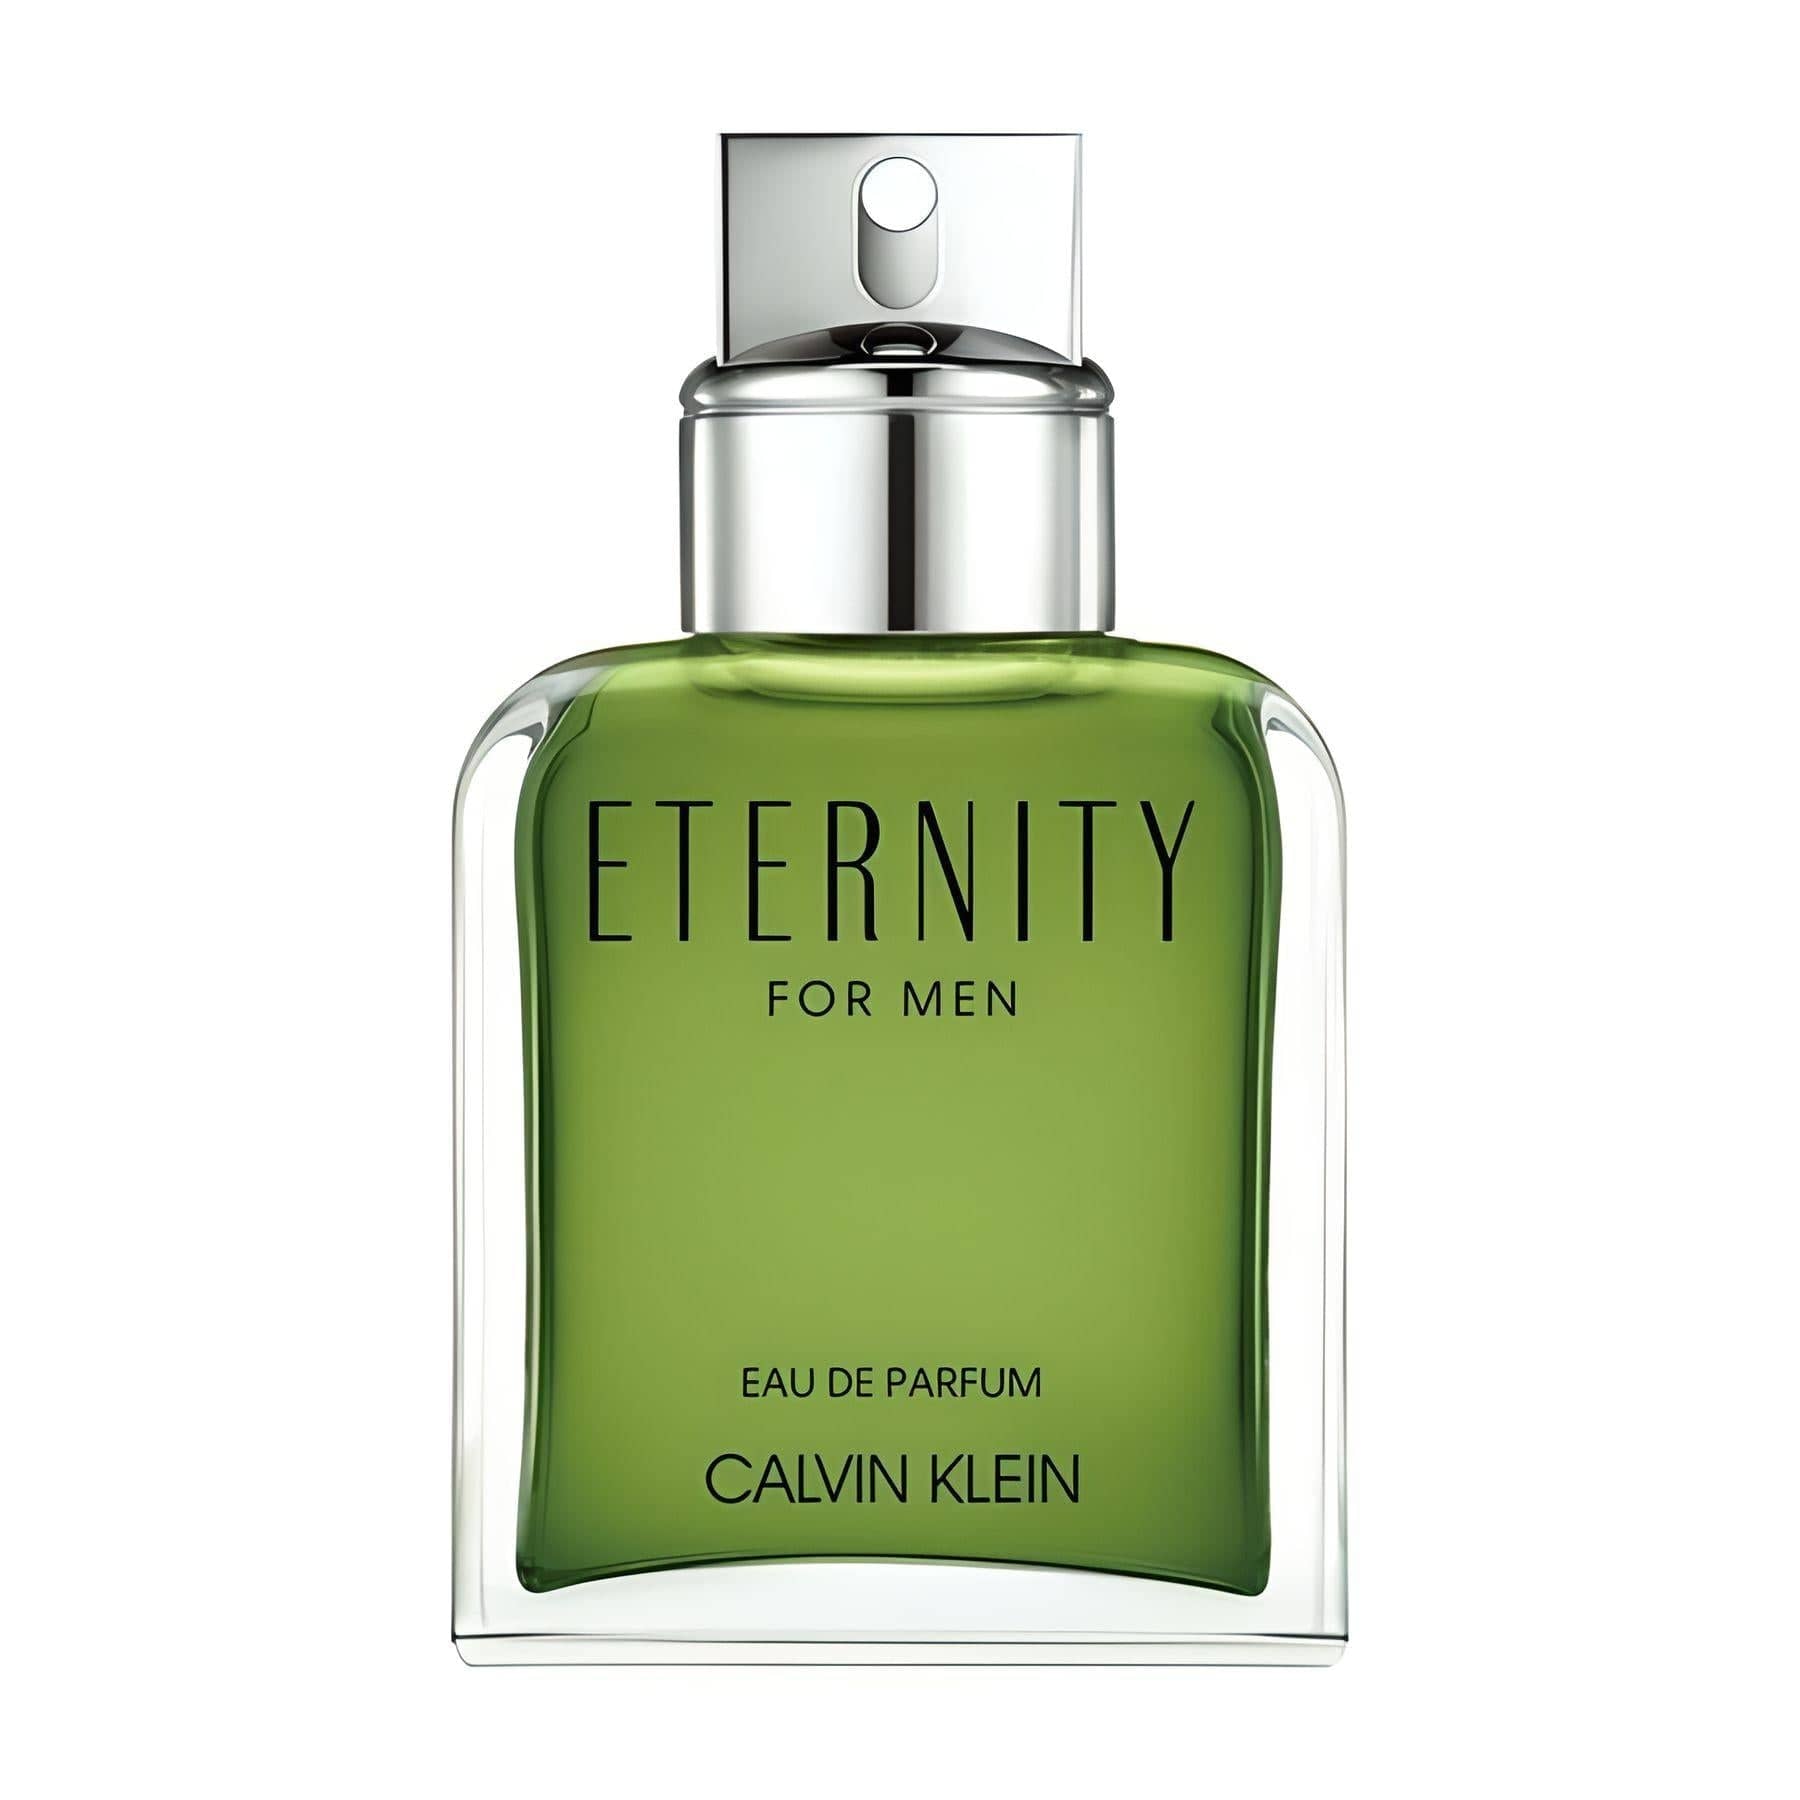 ETERNITY FOR MEN Eau de Parfum